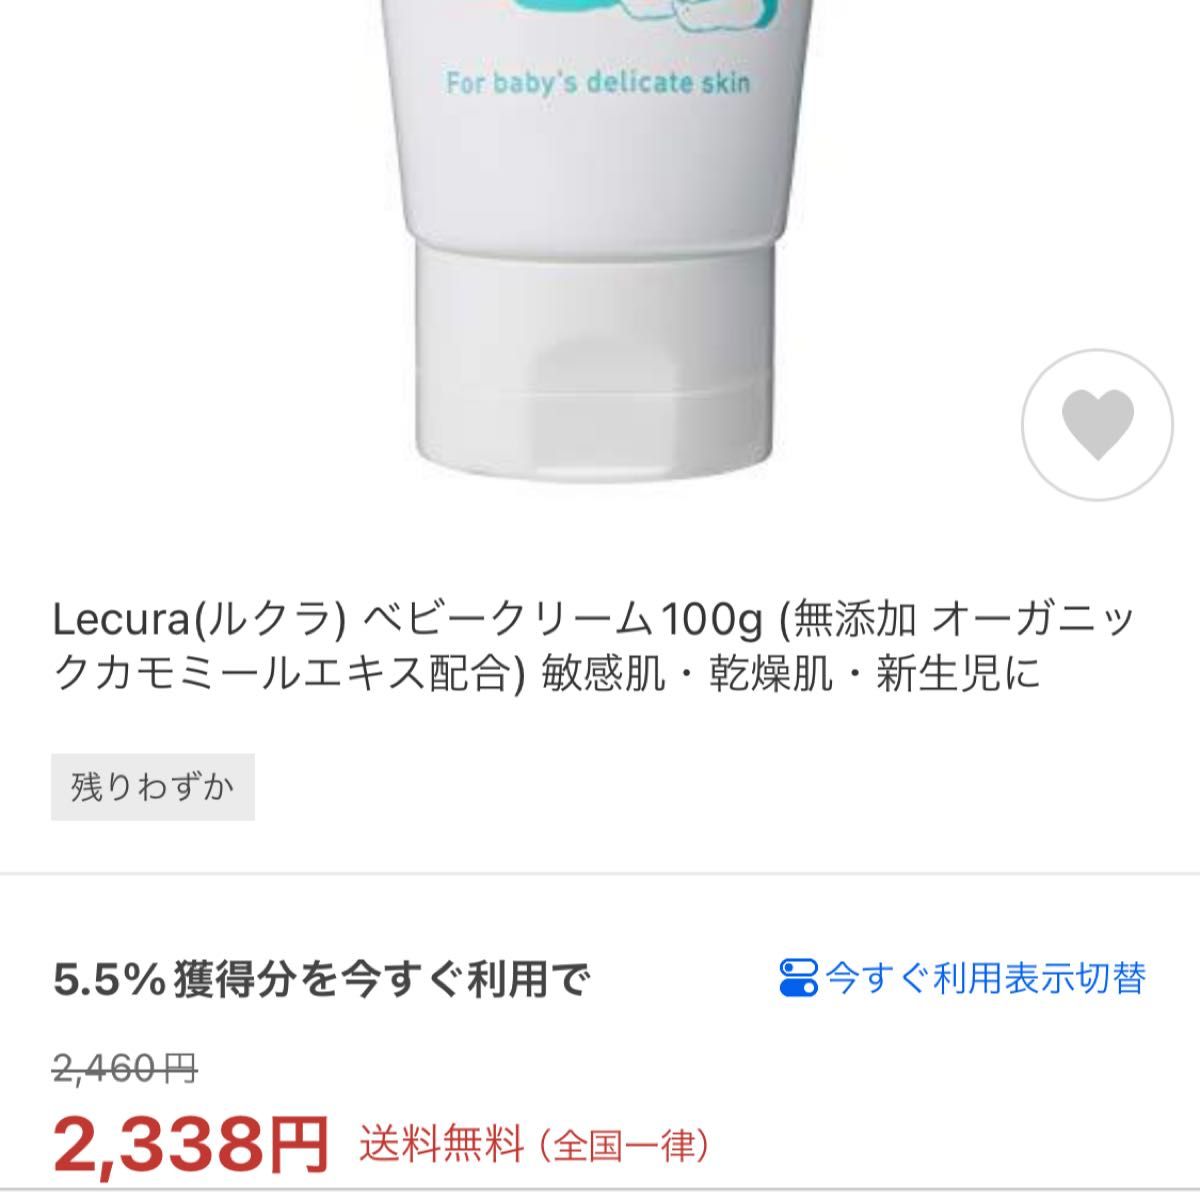 Lecura(ルクラ) ベビークリーム100g (無添加 オーガニックカモミールエキス配合) 敏感肌・乾燥肌・新生児に